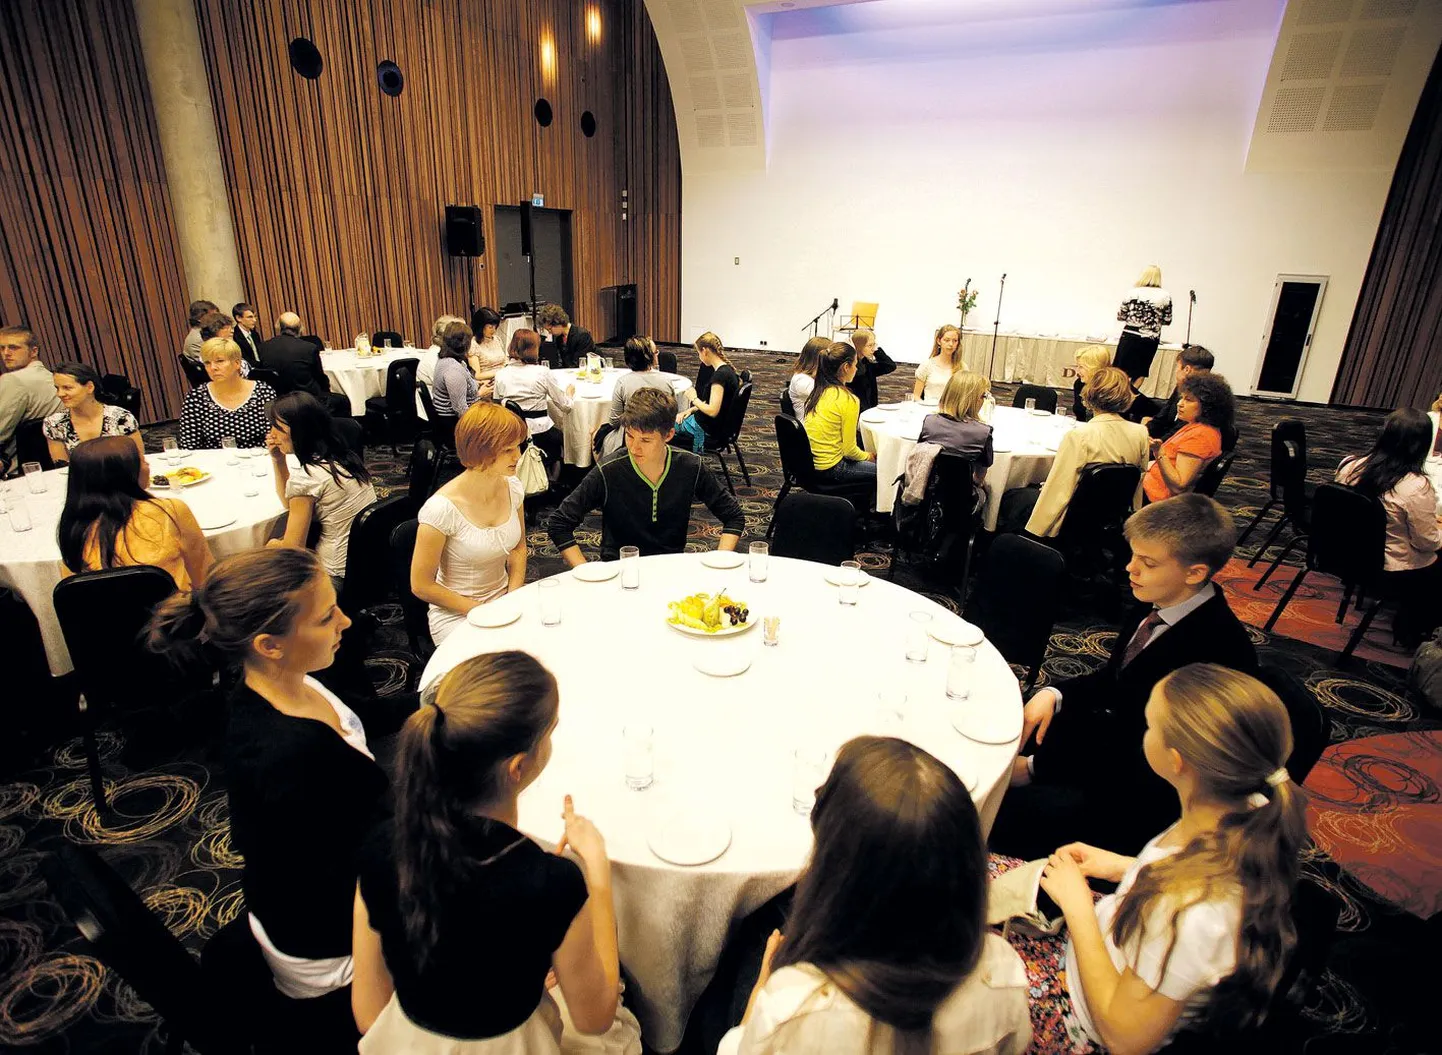 Eile kutsus Tartu linna haridusosakond Dorpati konverentsikeskusesse vastuvõtule need õpilased, kes saavutasid kõige paremaid tulemusi üleriigiliste ainetundmisvõistluste Tartu eelvoorudes, kokku 117 õpilast ja nende 85 juhendajat peaaegu kõigist linna koolidest.